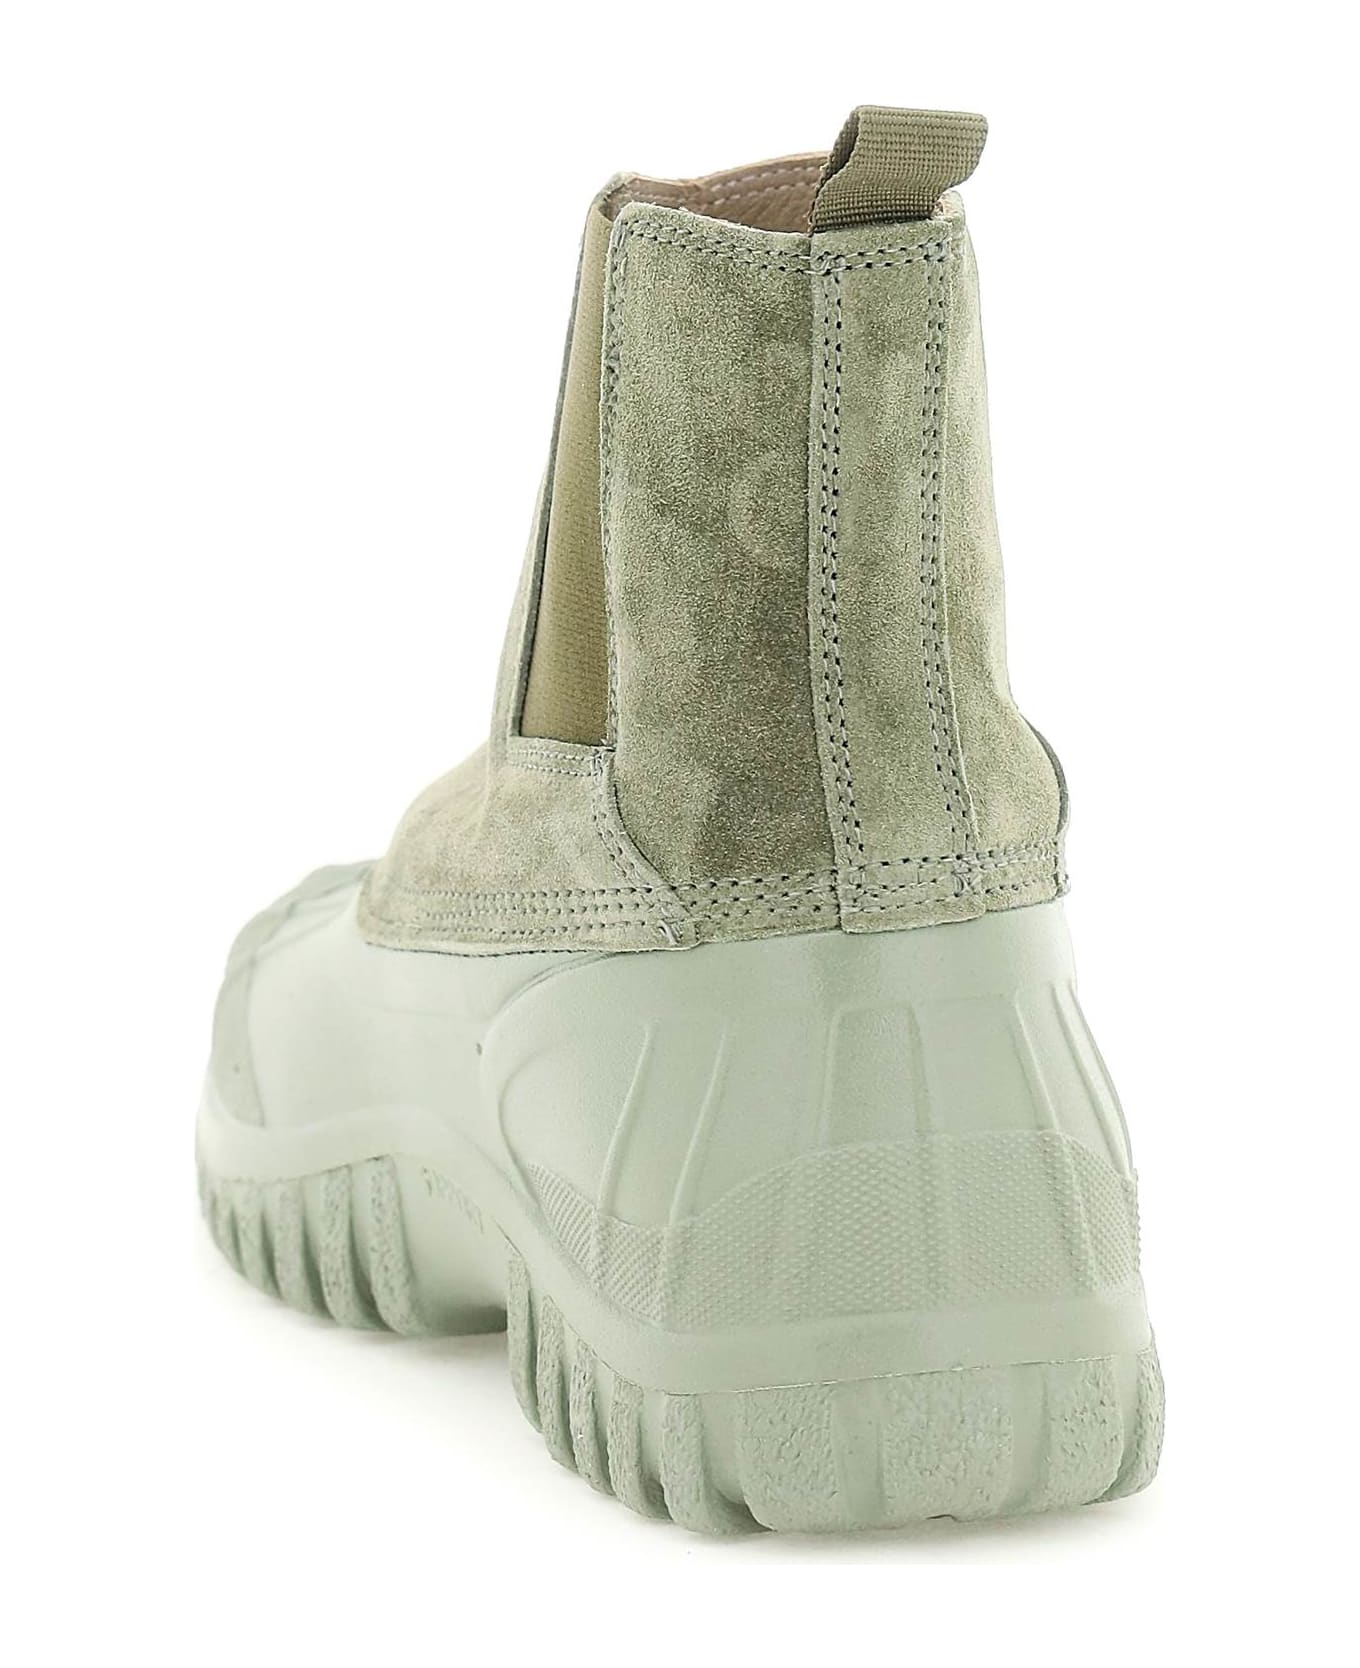 Diemme Balbi Boots - BURNT MOSS (Green)